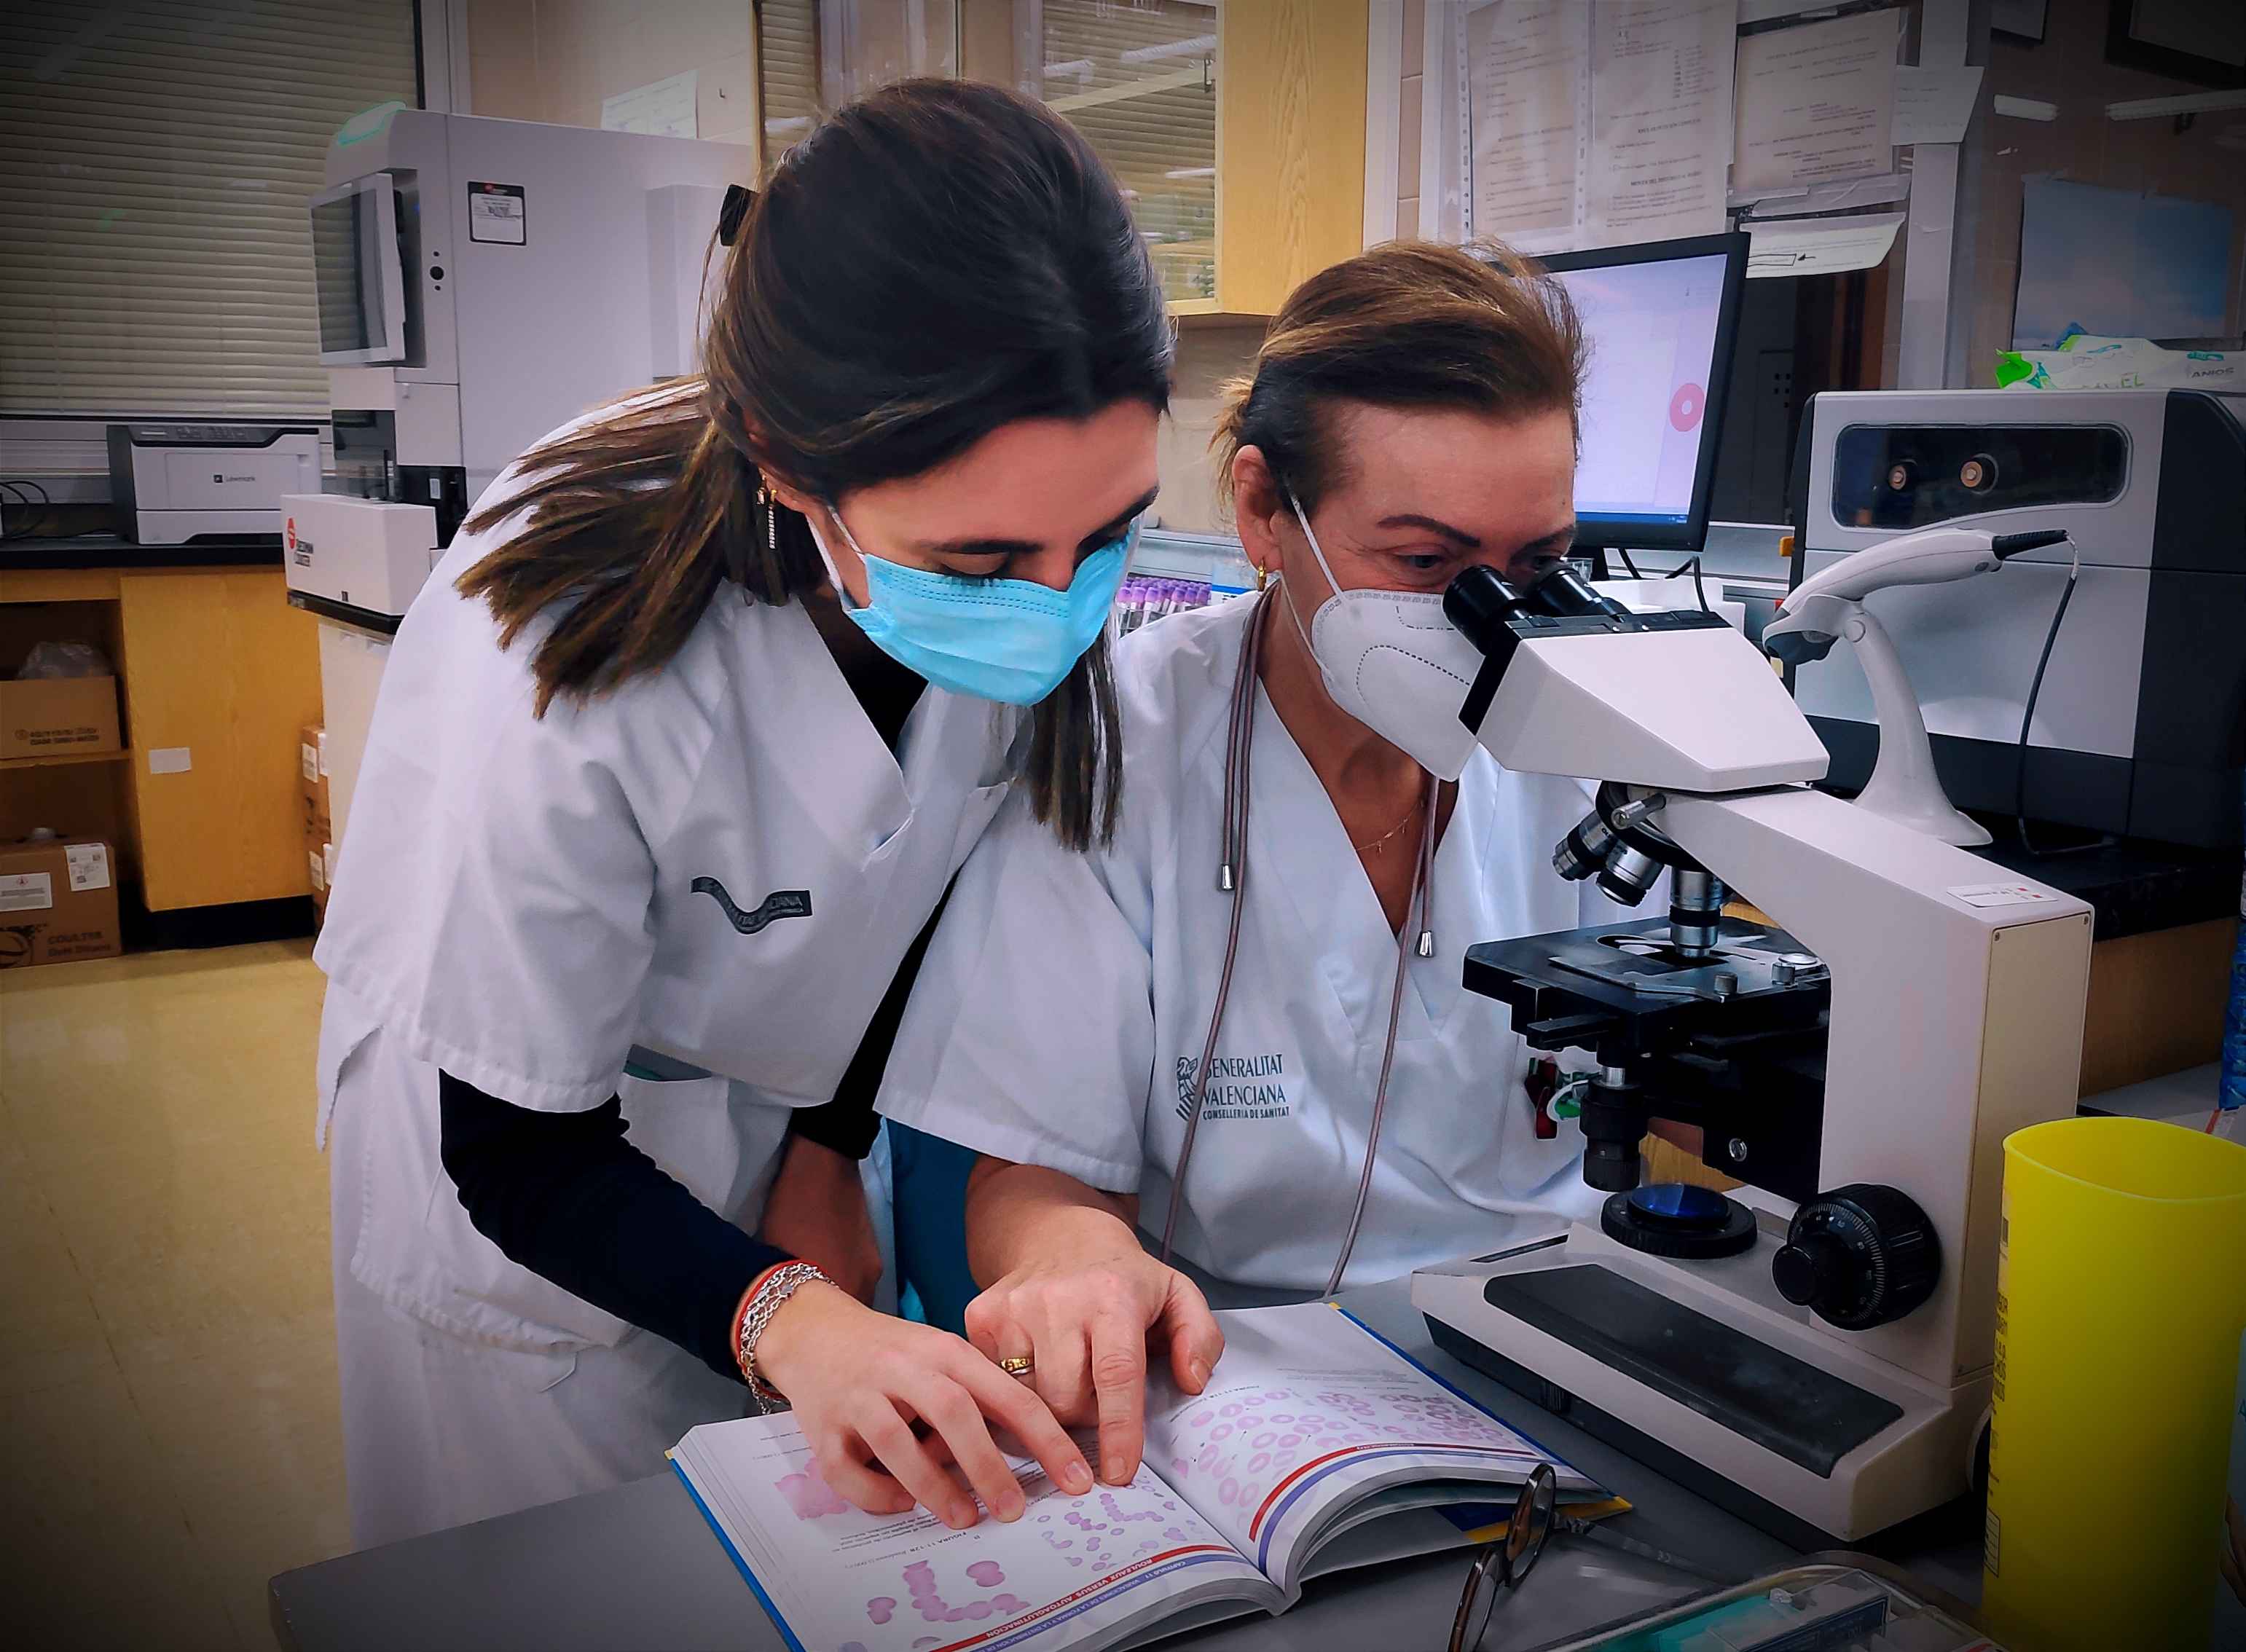 Sanitaria analizando muestras en un microscopio mientras compara junto a una compañera unas imágenes de un libro 